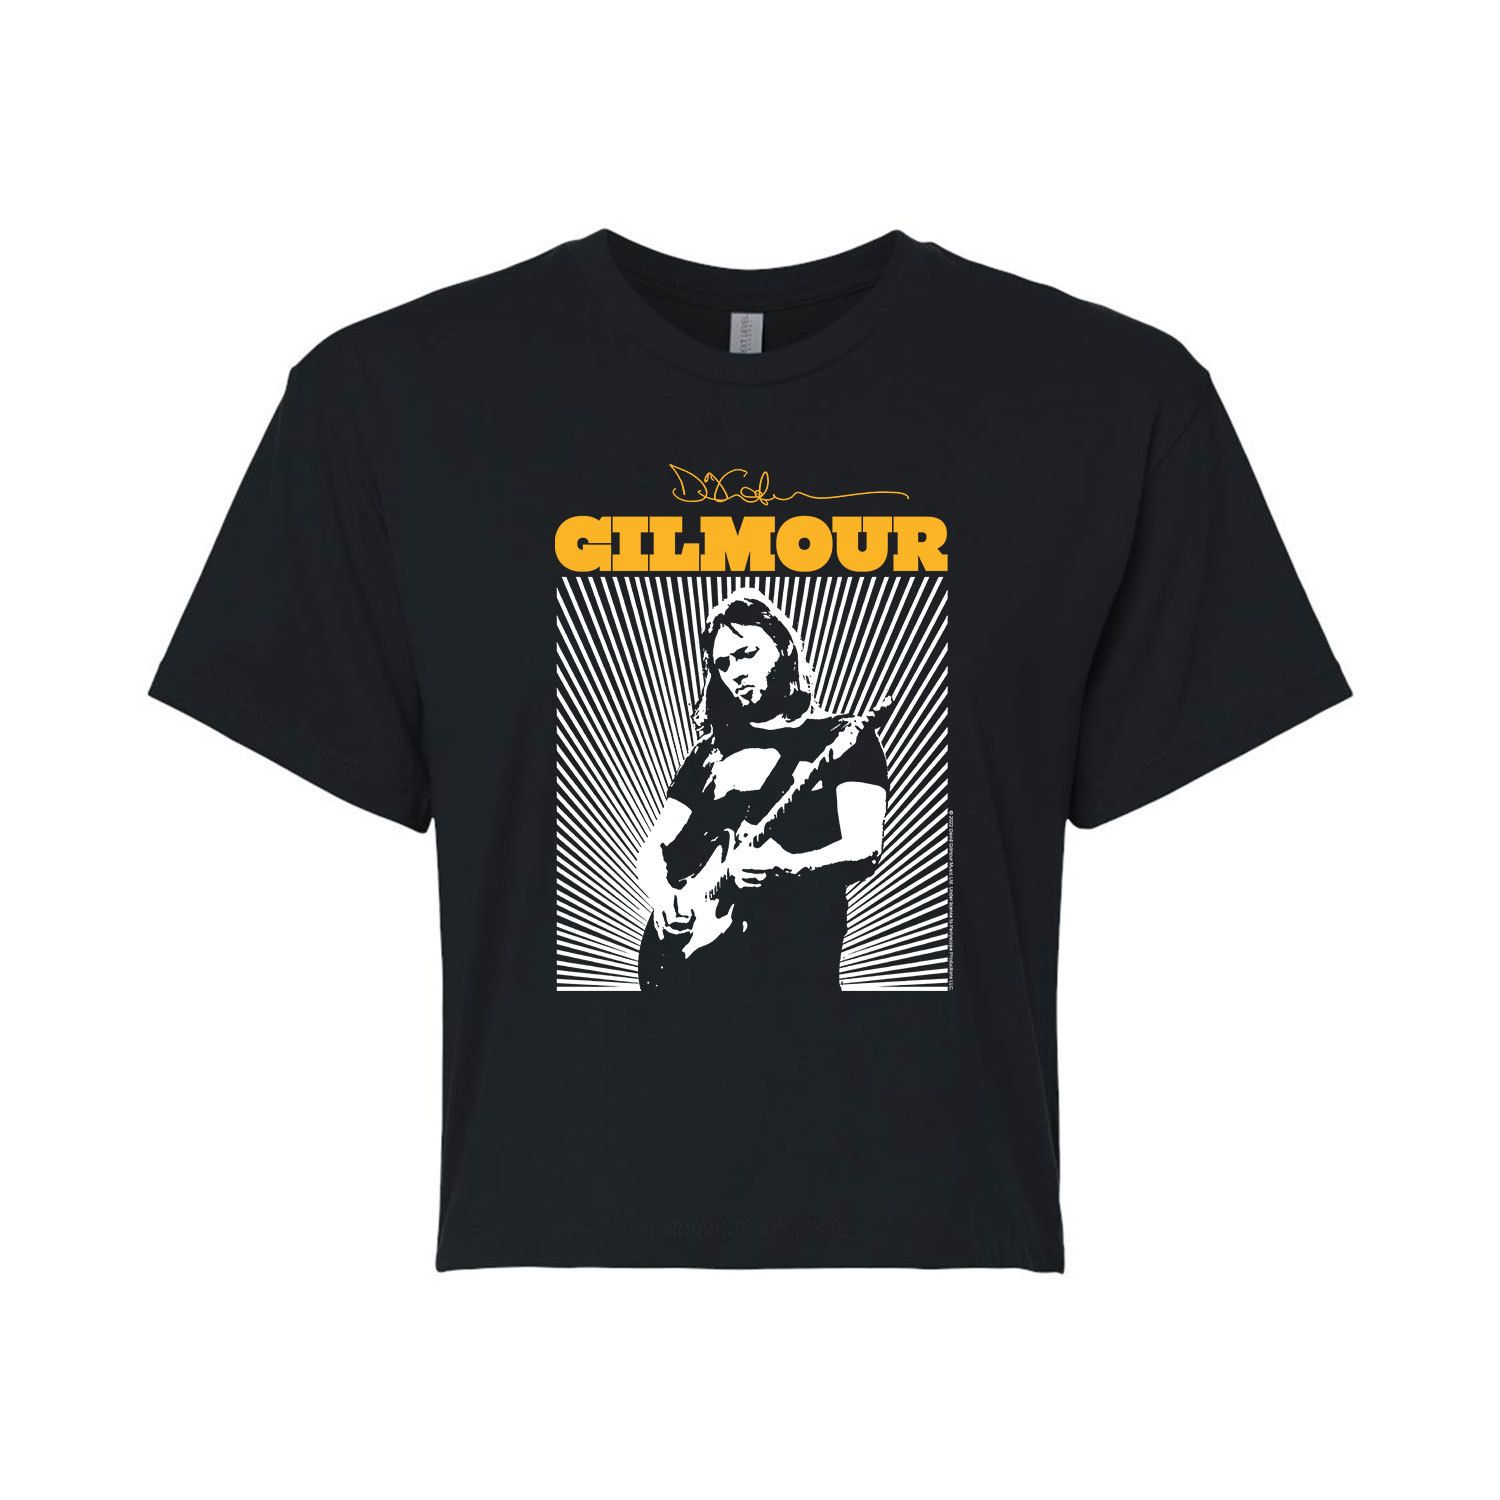 Укороченная футболка с рисунком David Gilmour Burst для юниоров Licensed Character футболка david gilmour